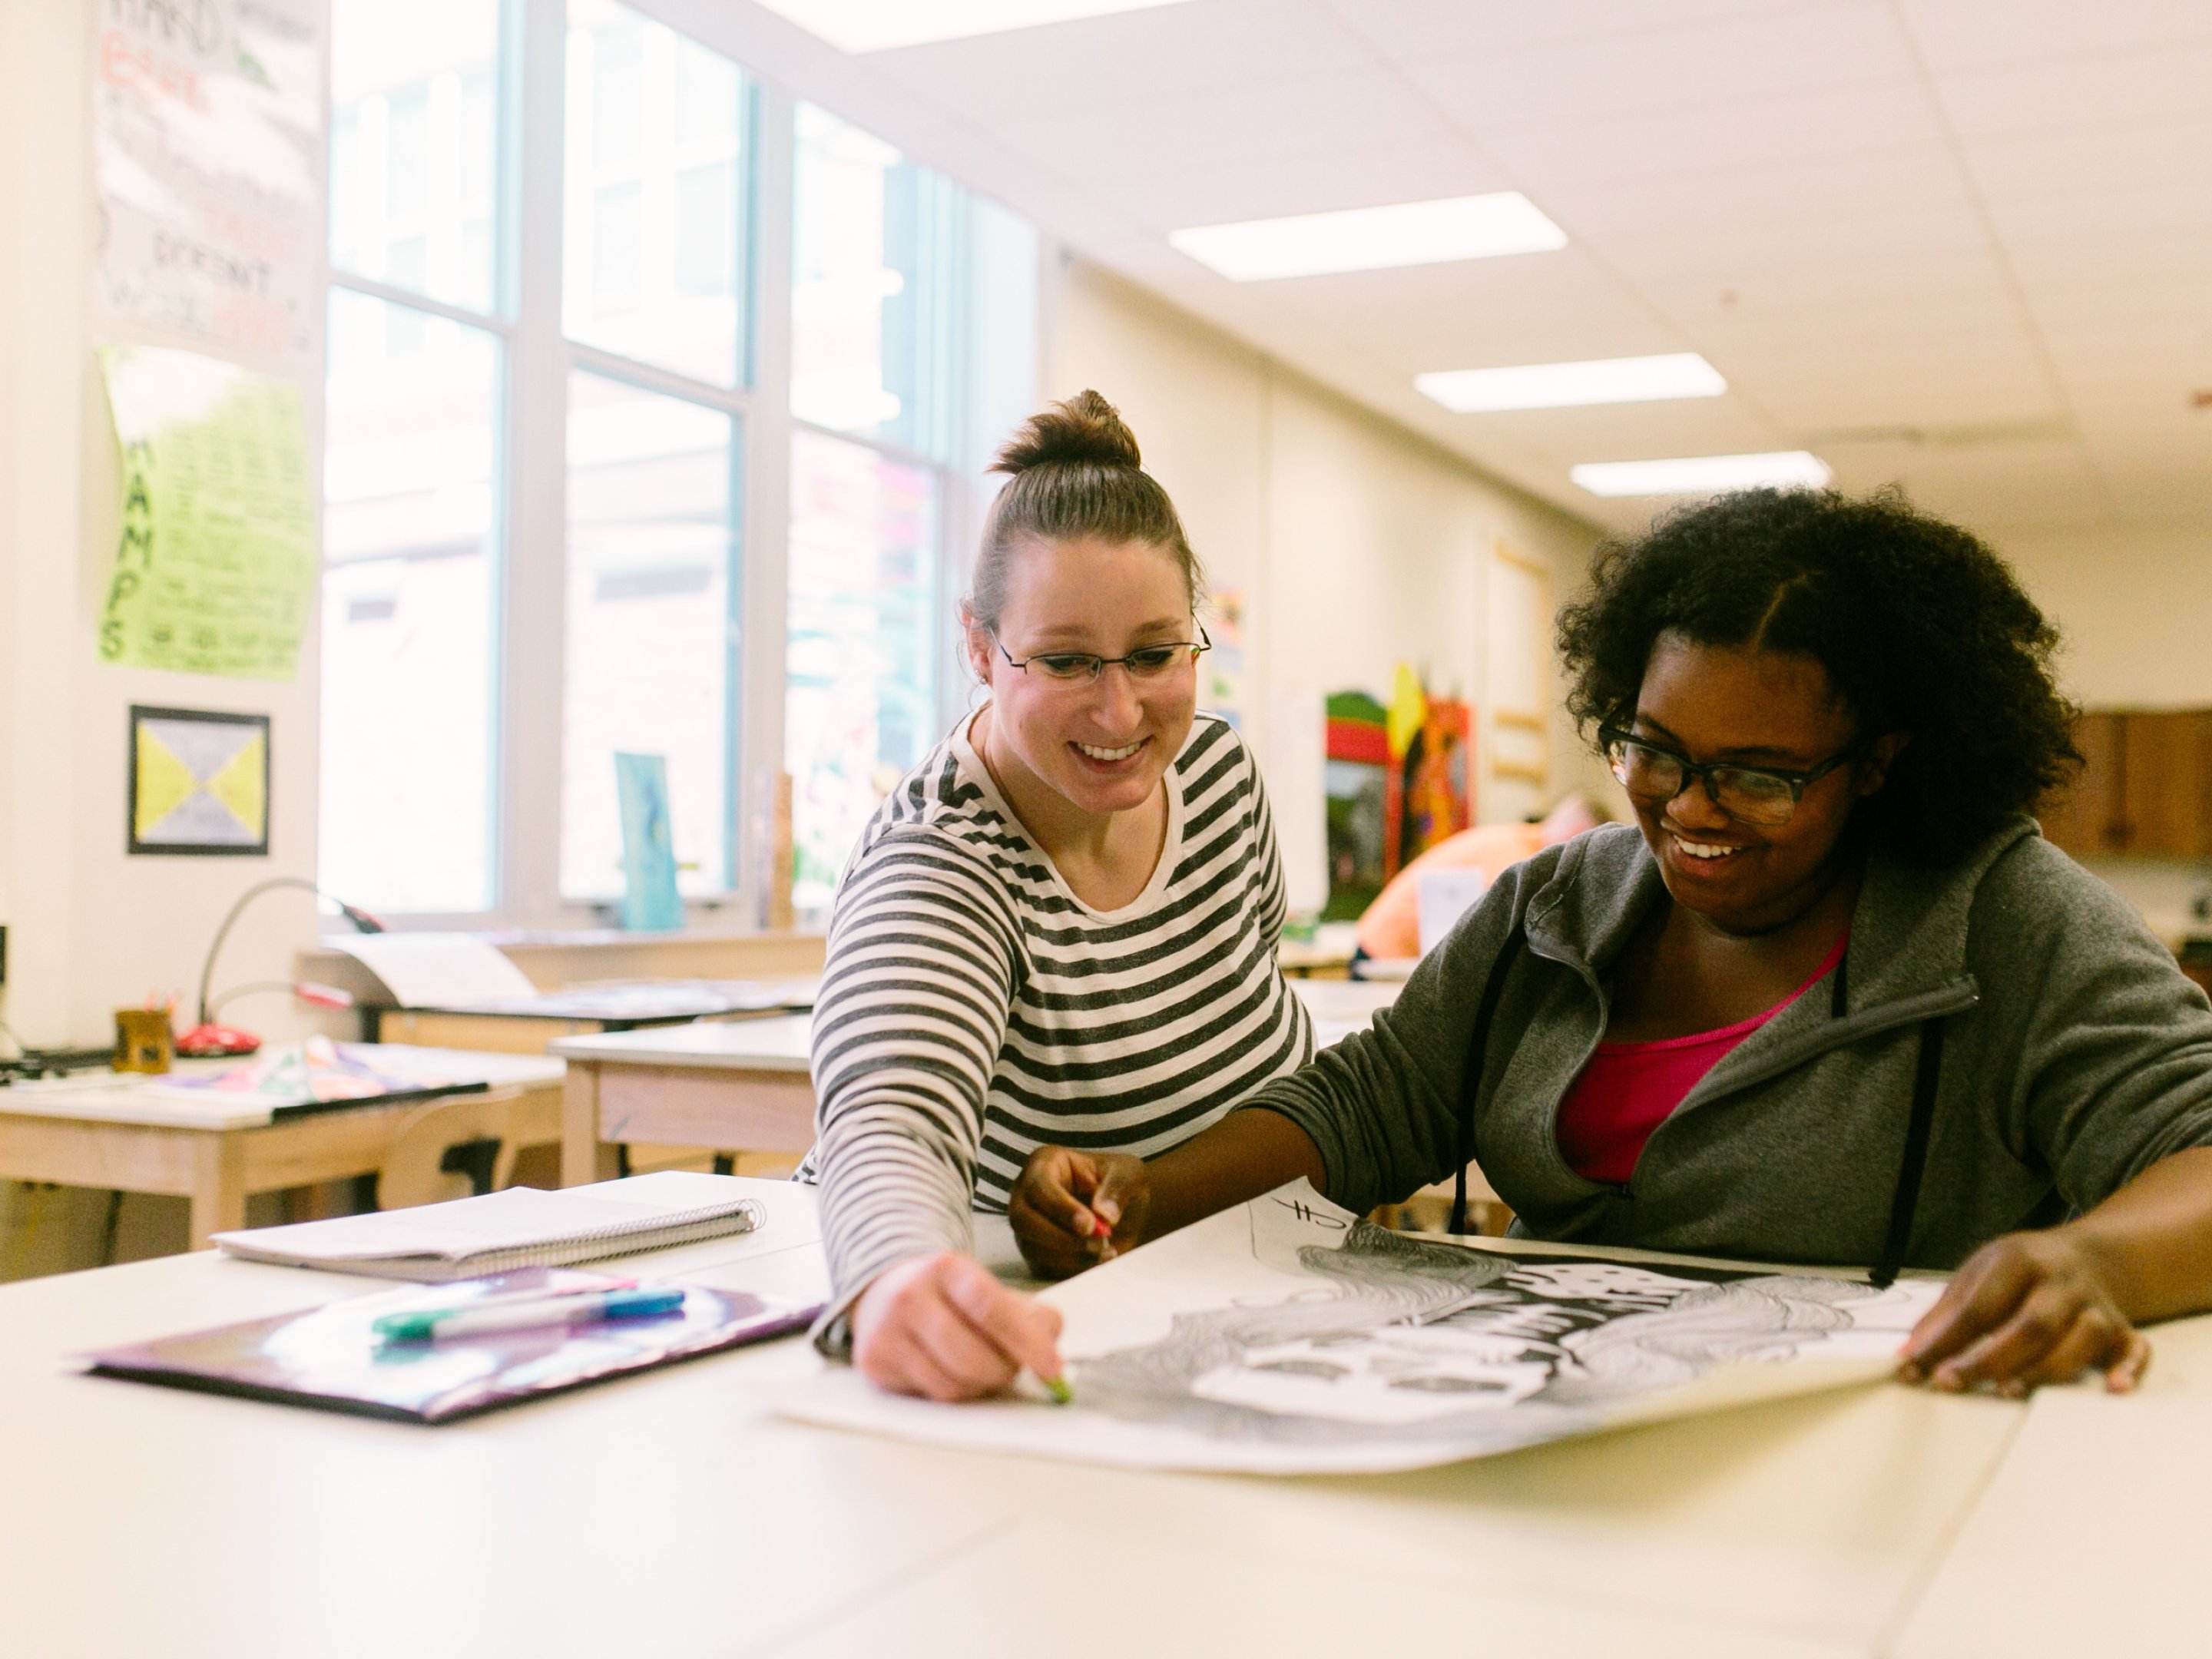 အနုပညာဆရာတစ်ဦးသည် ကျောင်းသားတစ်ဦးအား အနုပညာသင်တန်းတွင် ပုံဆွဲရာတွင် ကူညီပေး